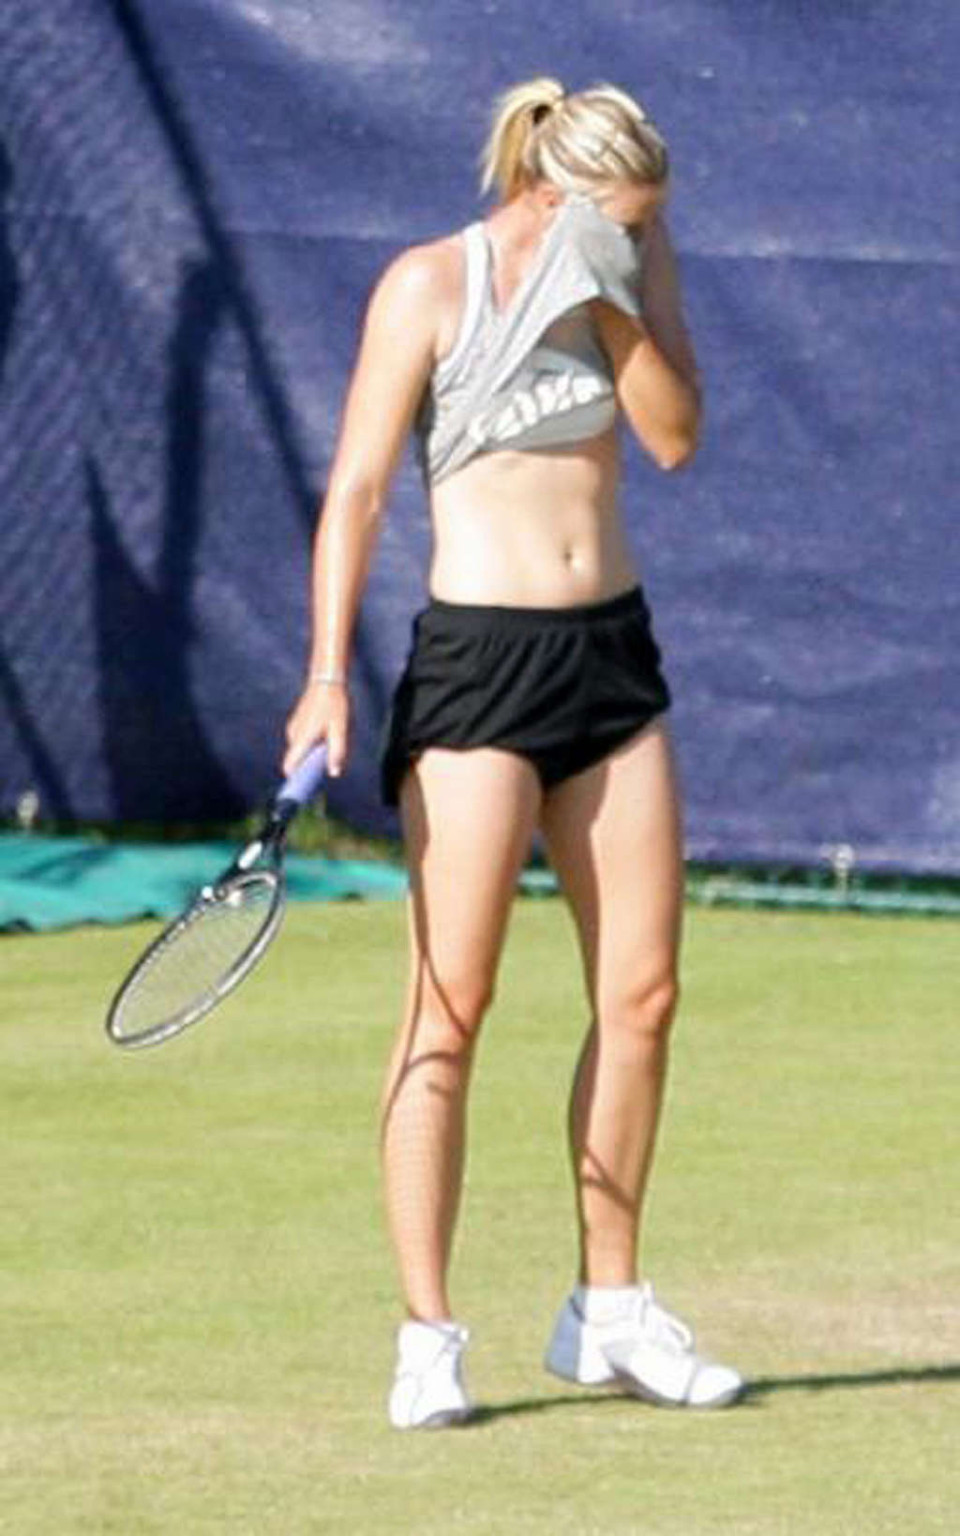 Maria sharapova nipple slip während spielen tennis paparazzi schießt
 #75346433